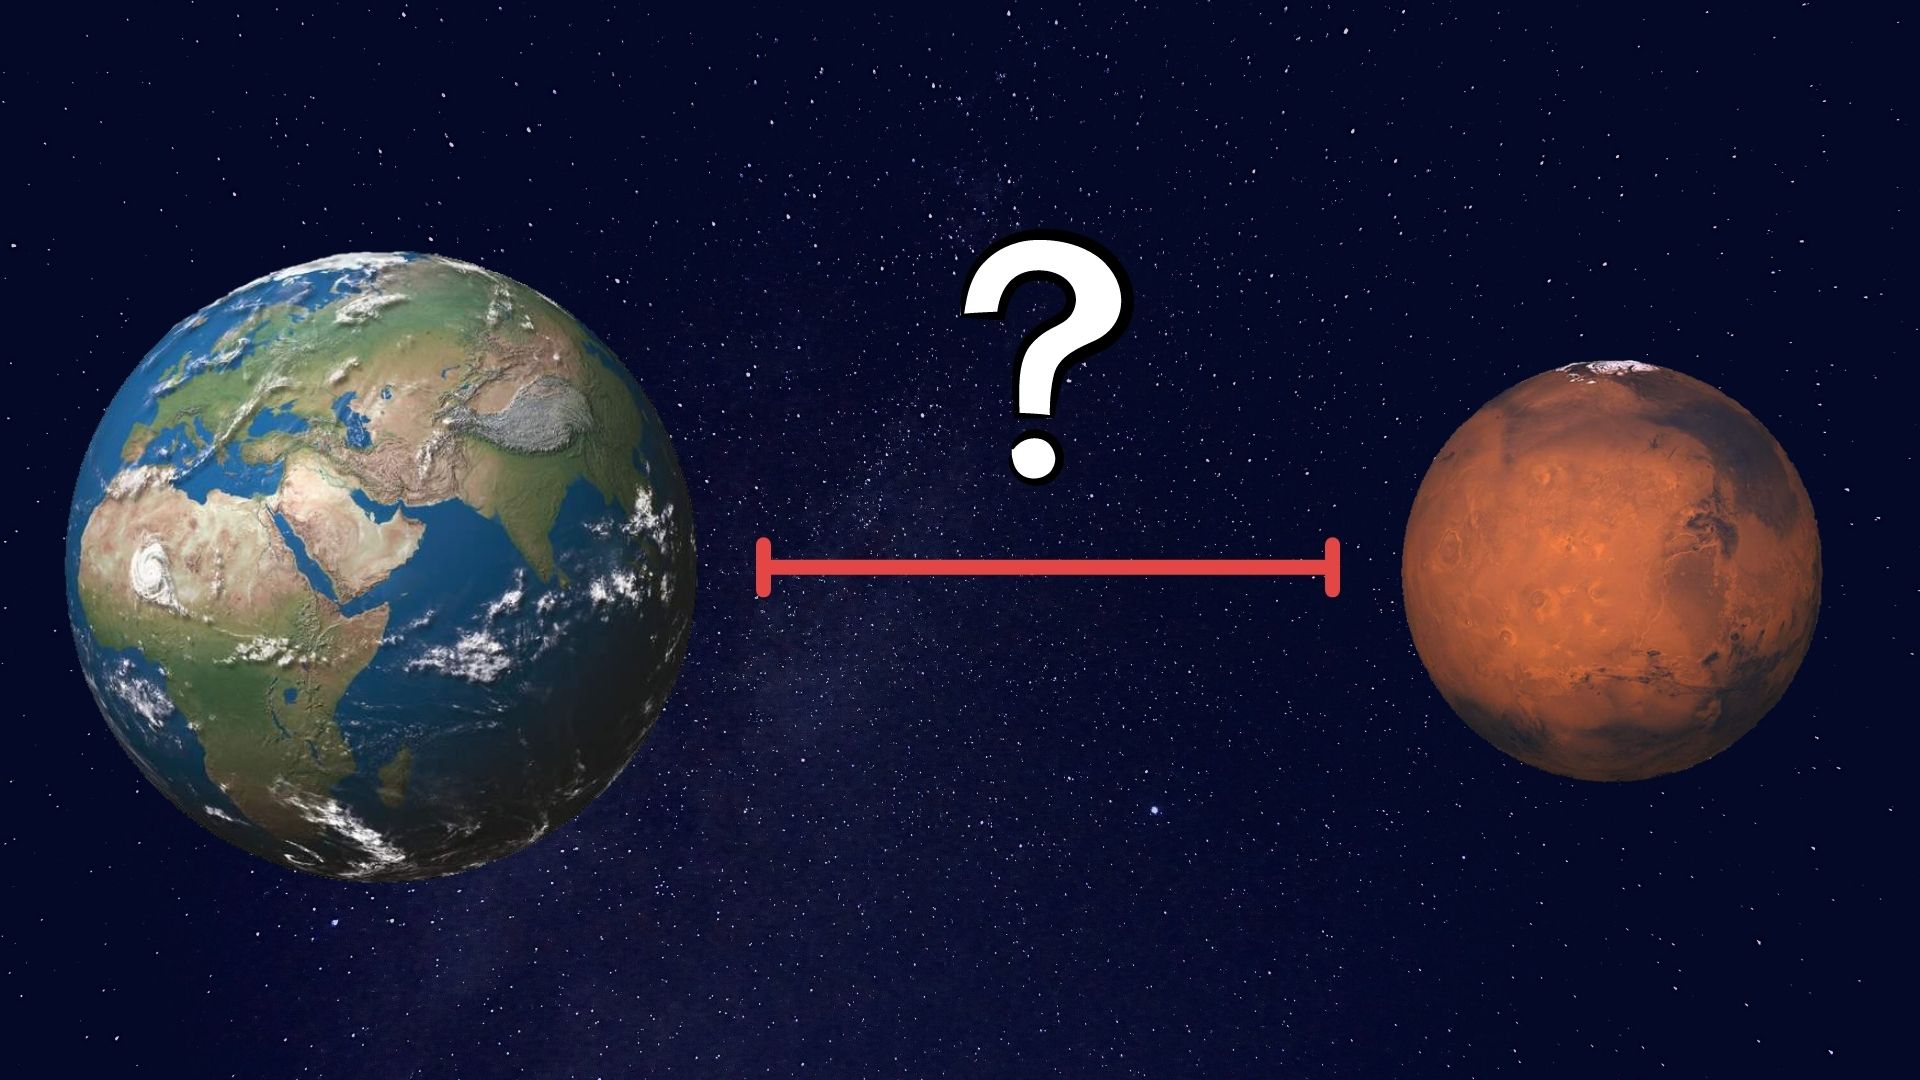 عکس آموزشی فاصله بین کره زمین و مریخ فاصله متوسط ​​این دو سیاره نزدیکترین حالت 56 میلیون کیلومتر دورترین فاصله 401 میلیون کیلومتر